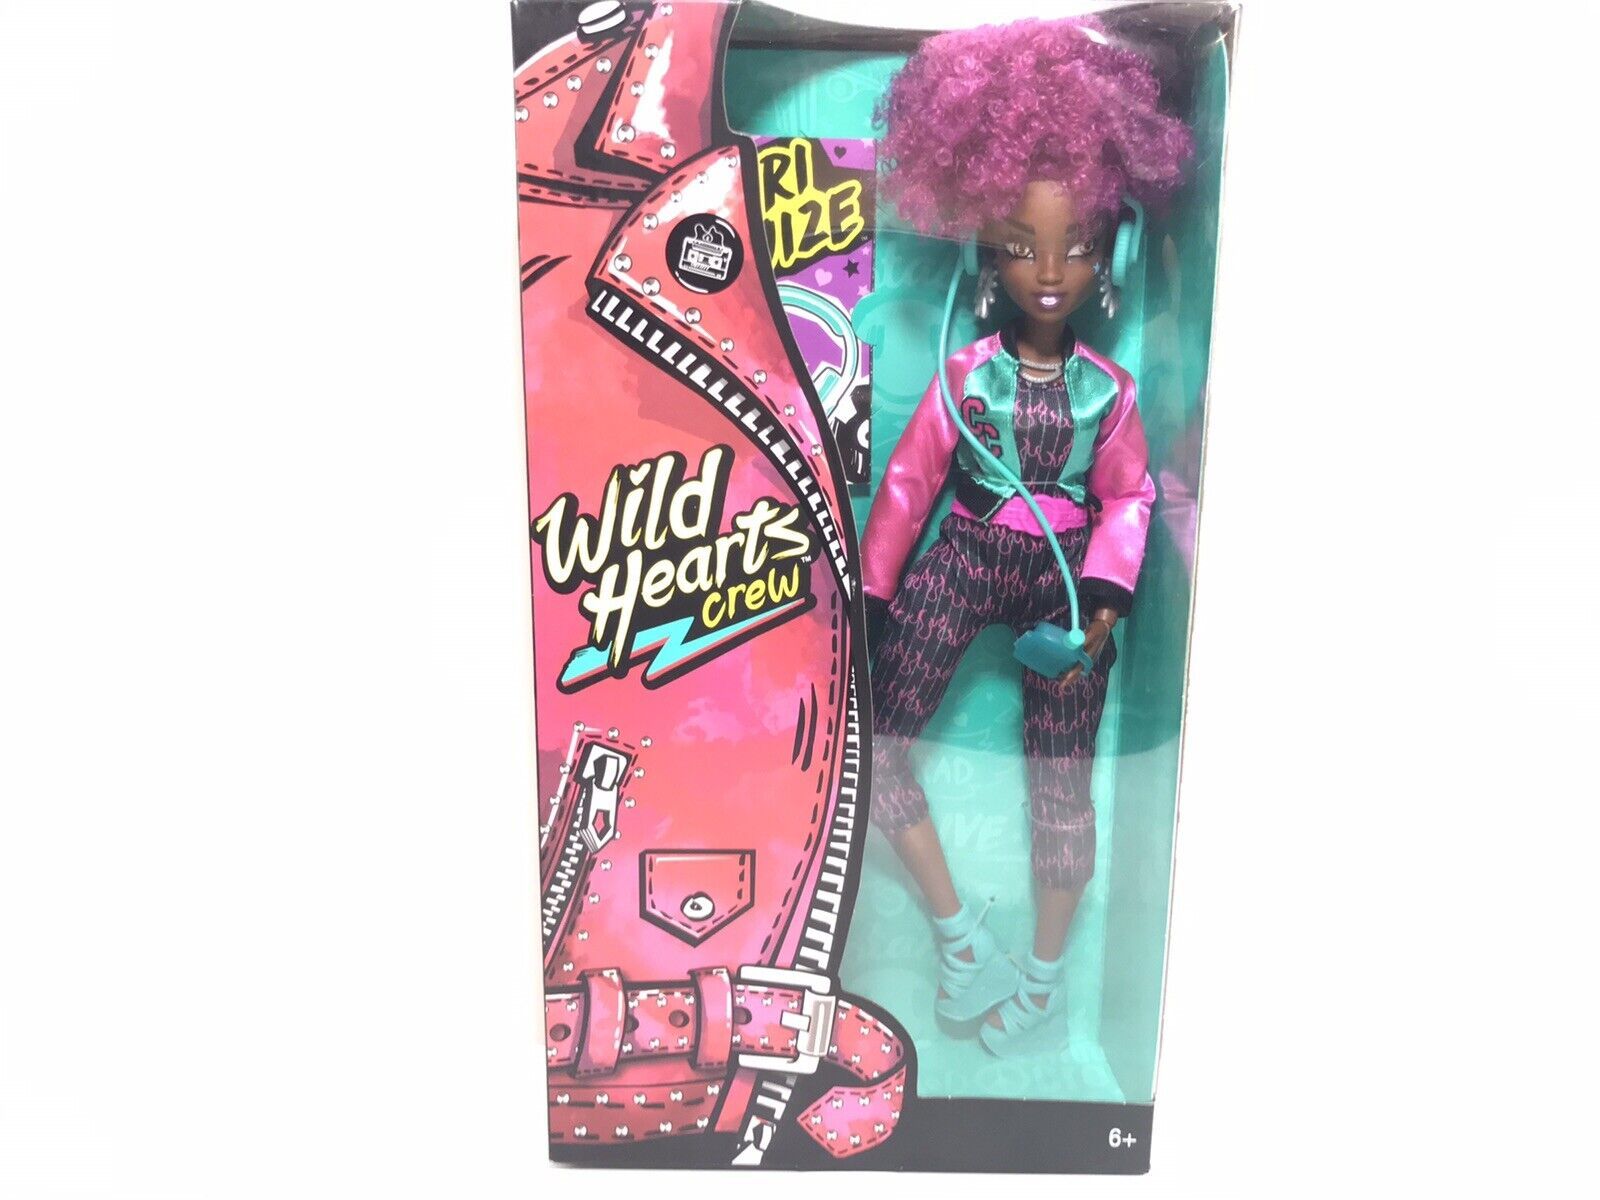 Wild Hearts Crew Cori Cruize Fashion Doll with Accessories 2019 Mattel - $11.87